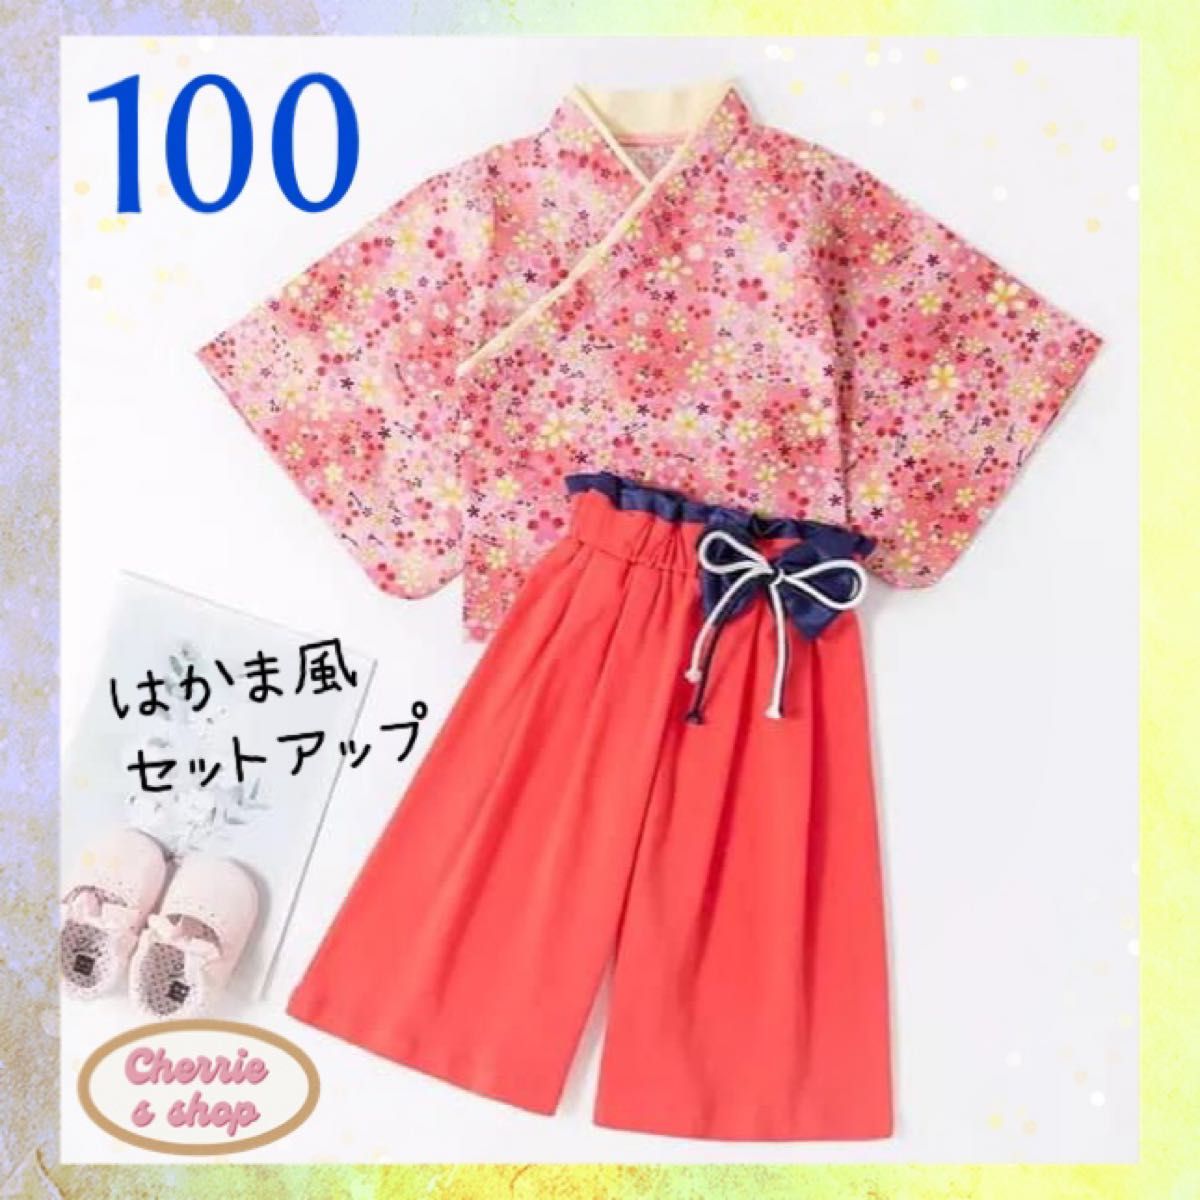 130 女の子 袴 セットアップ ネイビー 花柄 七五三 キッズ 着物